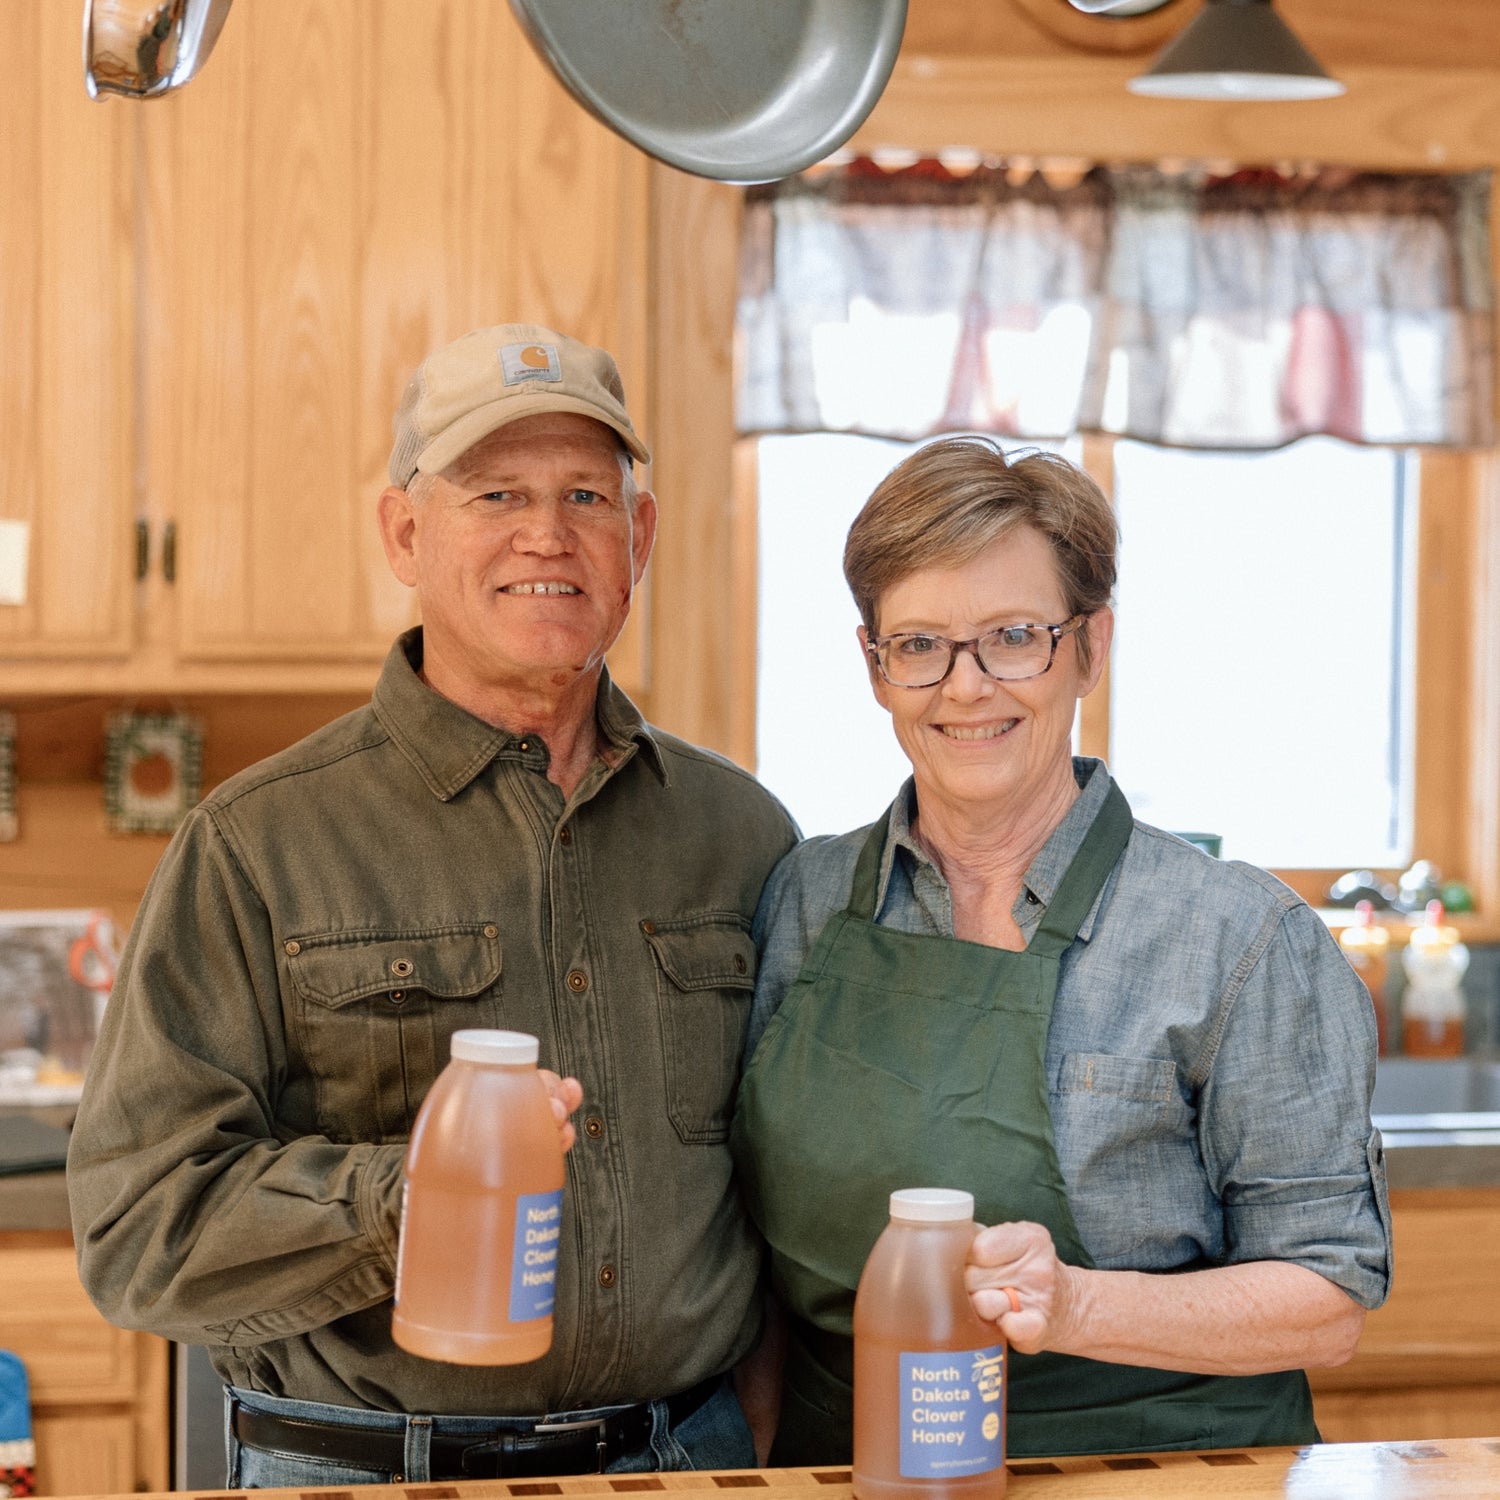 Mark and Rebecca Sperry holding bottles of gluten-free honey.